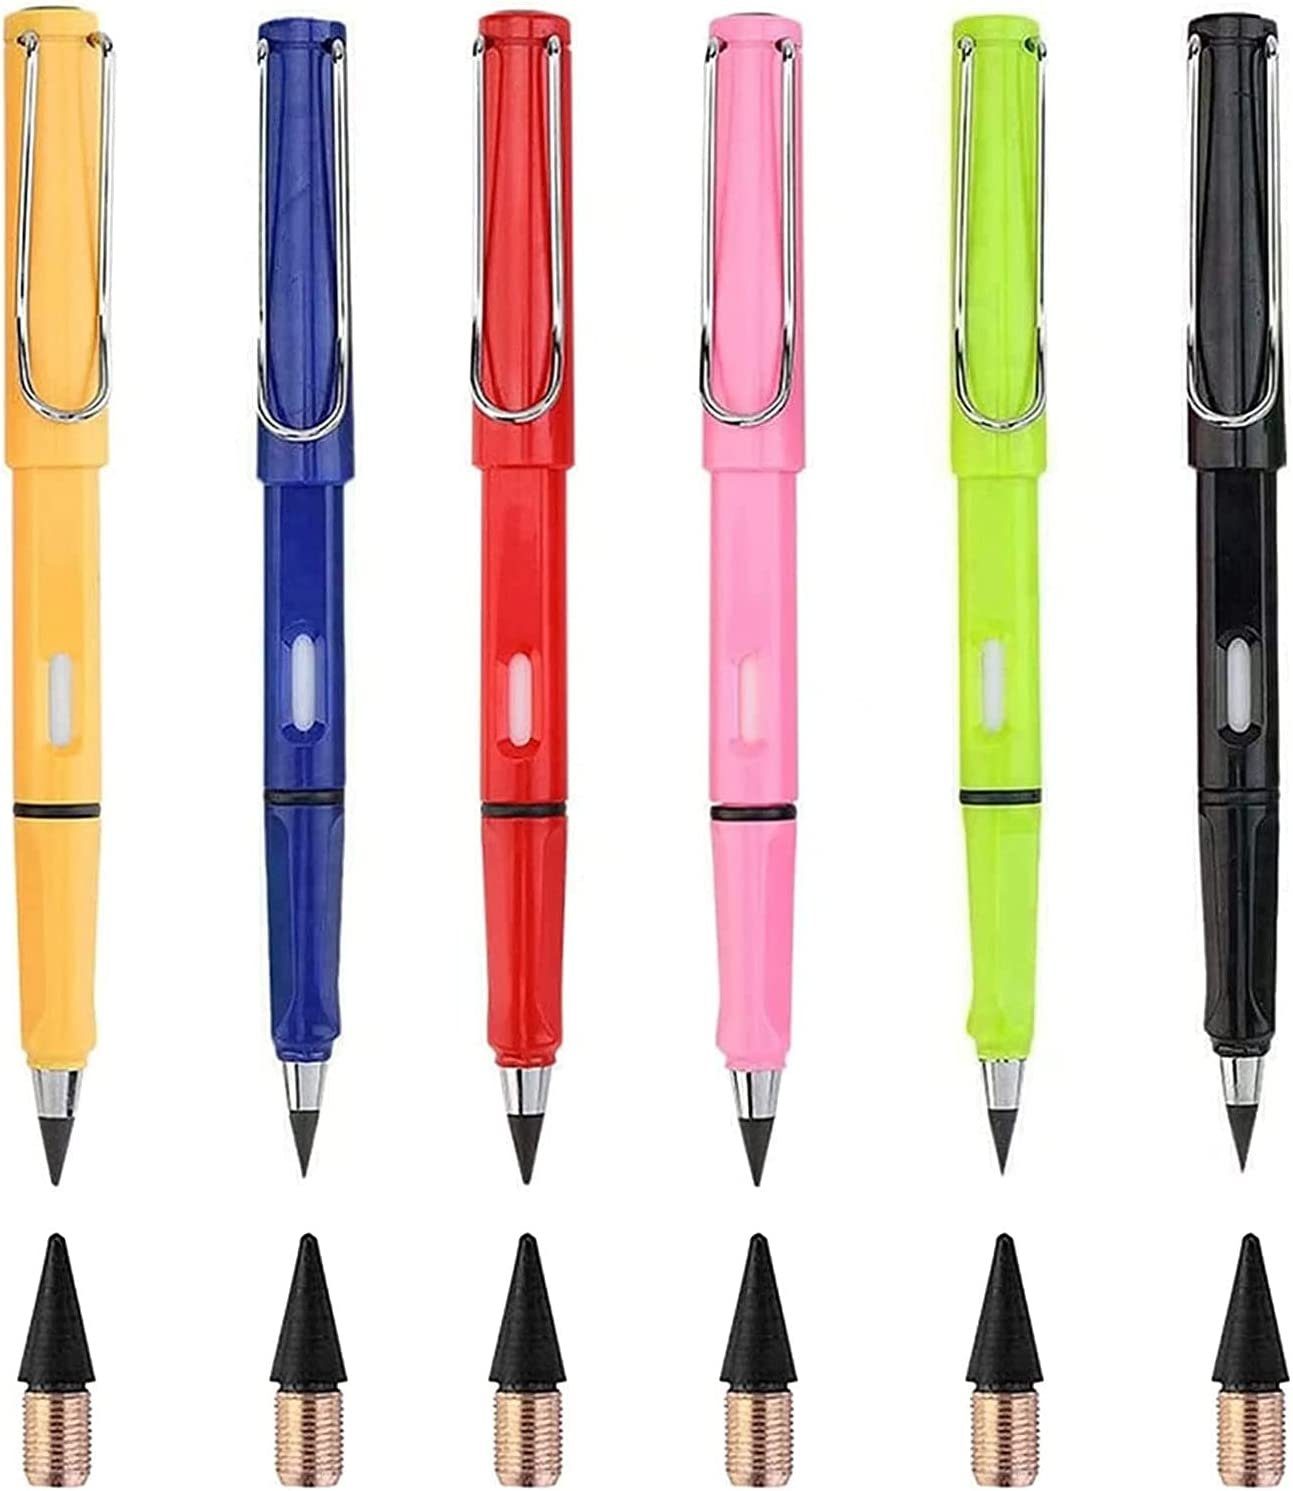 XDeer Bleistift Der Bleistift,Tragbarer gefragte für auf am Tinte Farbe zum die C Legierungsmetallmoleküle Papieroberfläche Papier bleiben Immerwährender Bleistift,Ewiger Spitze schreiben. Schüler/Künstler ohne Tintenschreiber sich Aus Bleistift Bleistifte,Unendlicher Zeichnen neue Anspitzen reibt,die Schreiben, der und oder Bleistift,Tintenlose kann zersetzen Dieser wenn (6-tlg), Bleistift,Wiederverwendbar bleistift Metall,wunderbarer